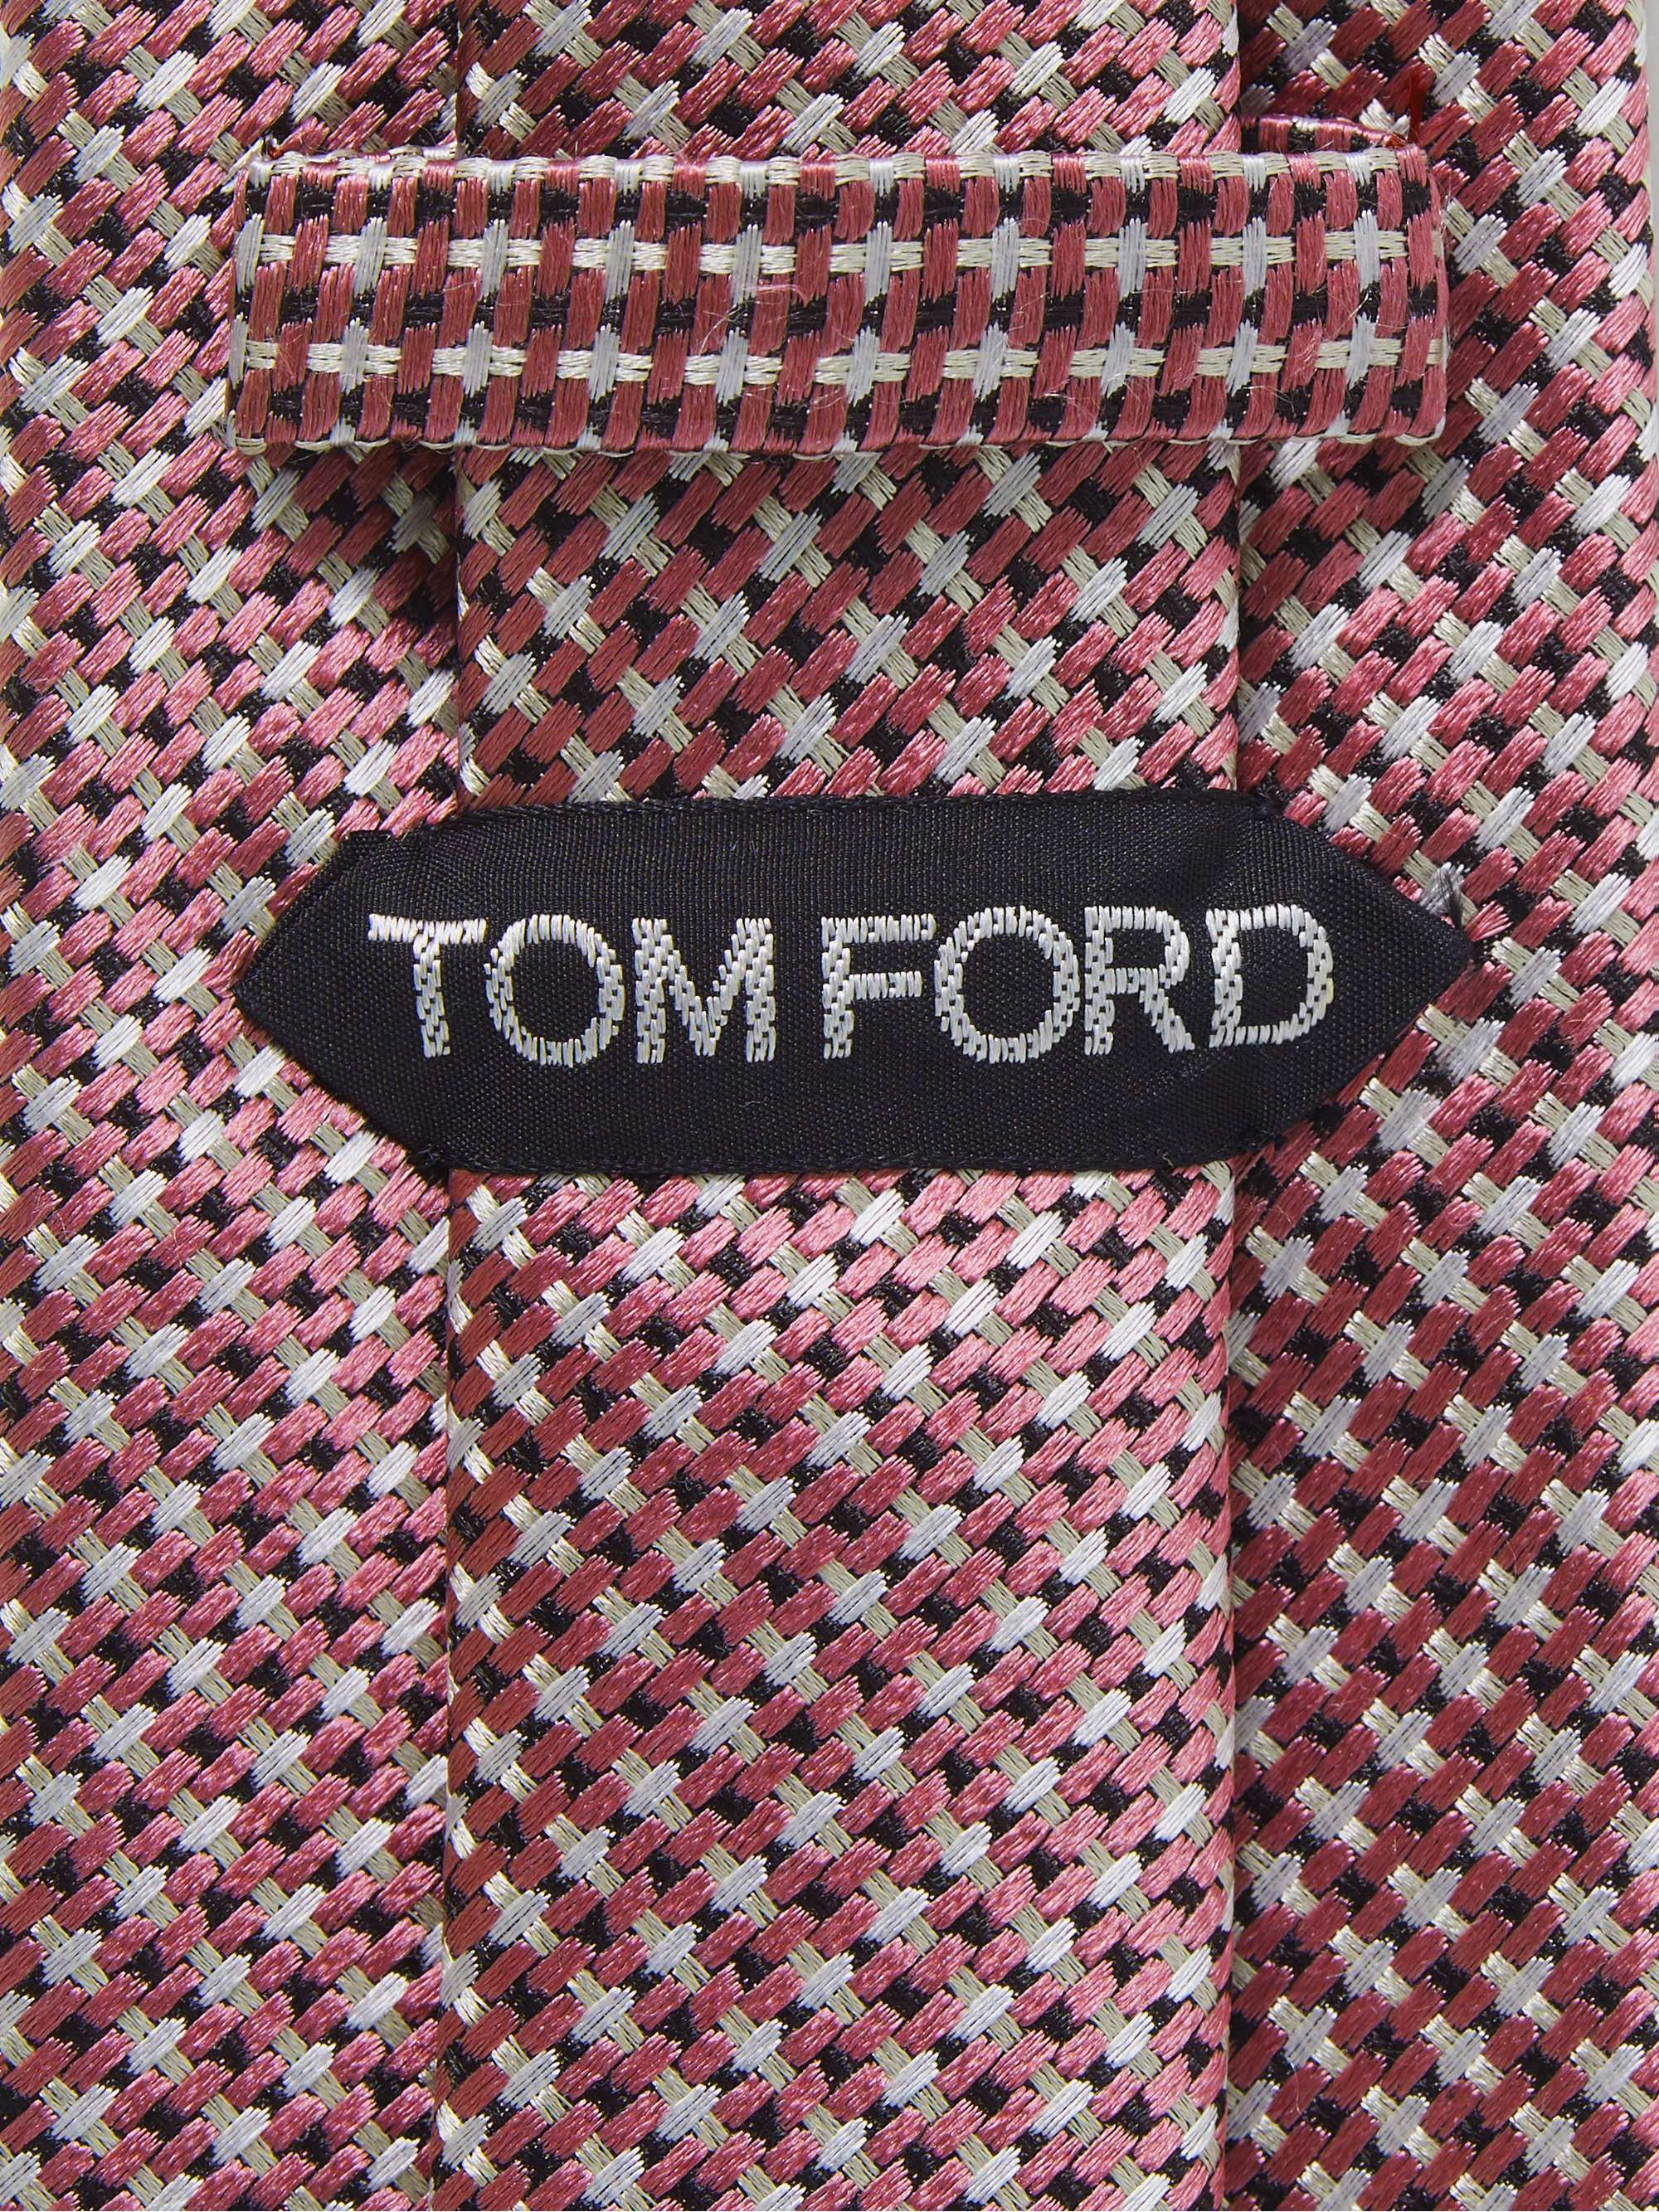 TOM FORD 